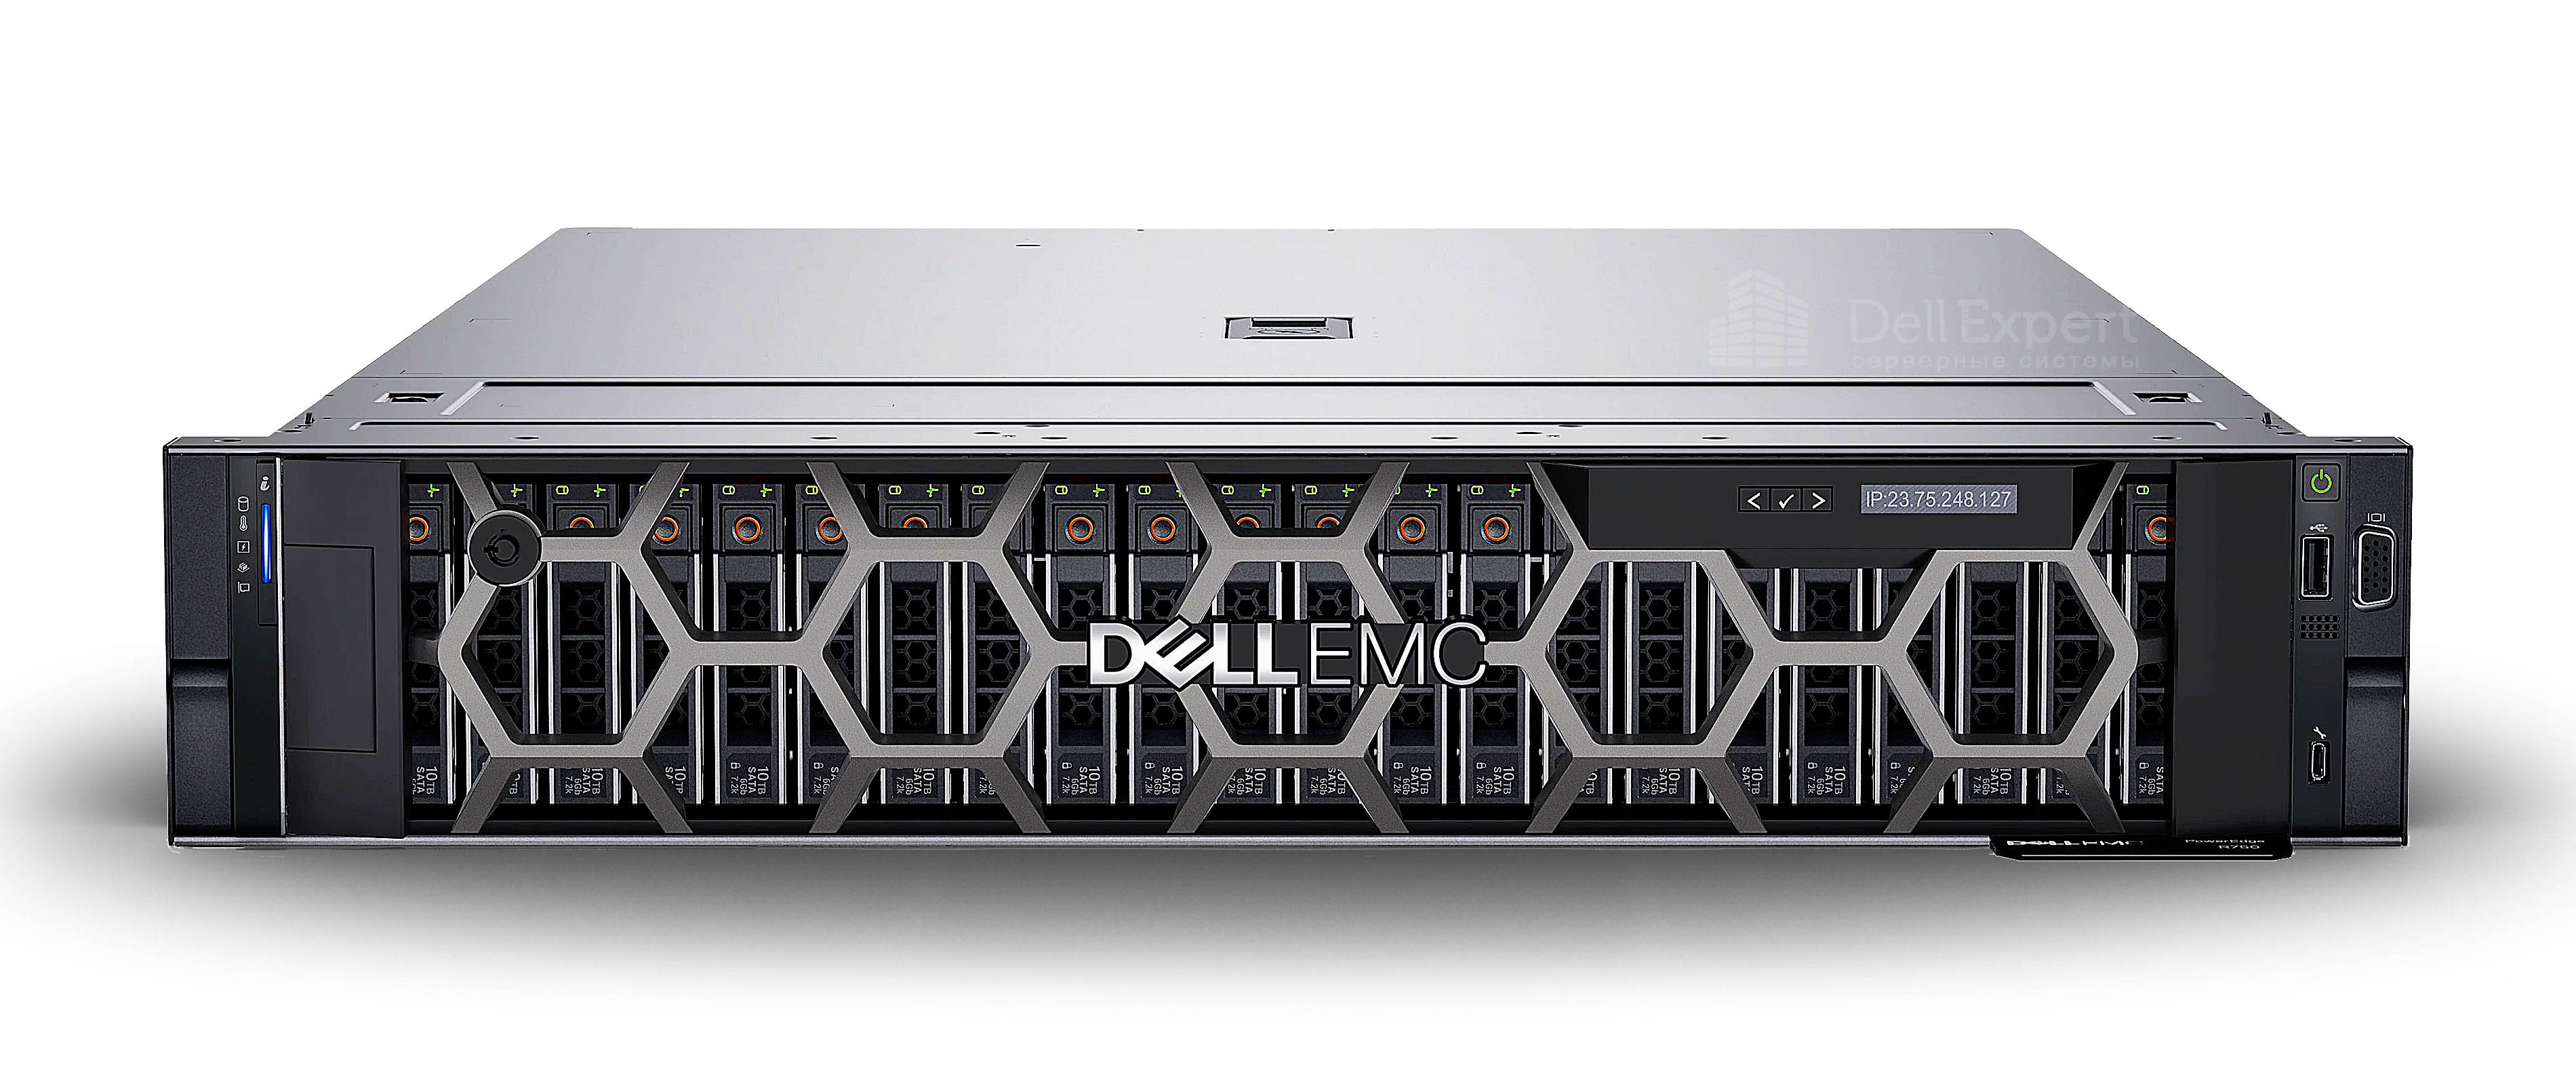 server Dell EMC PowerEdge R750